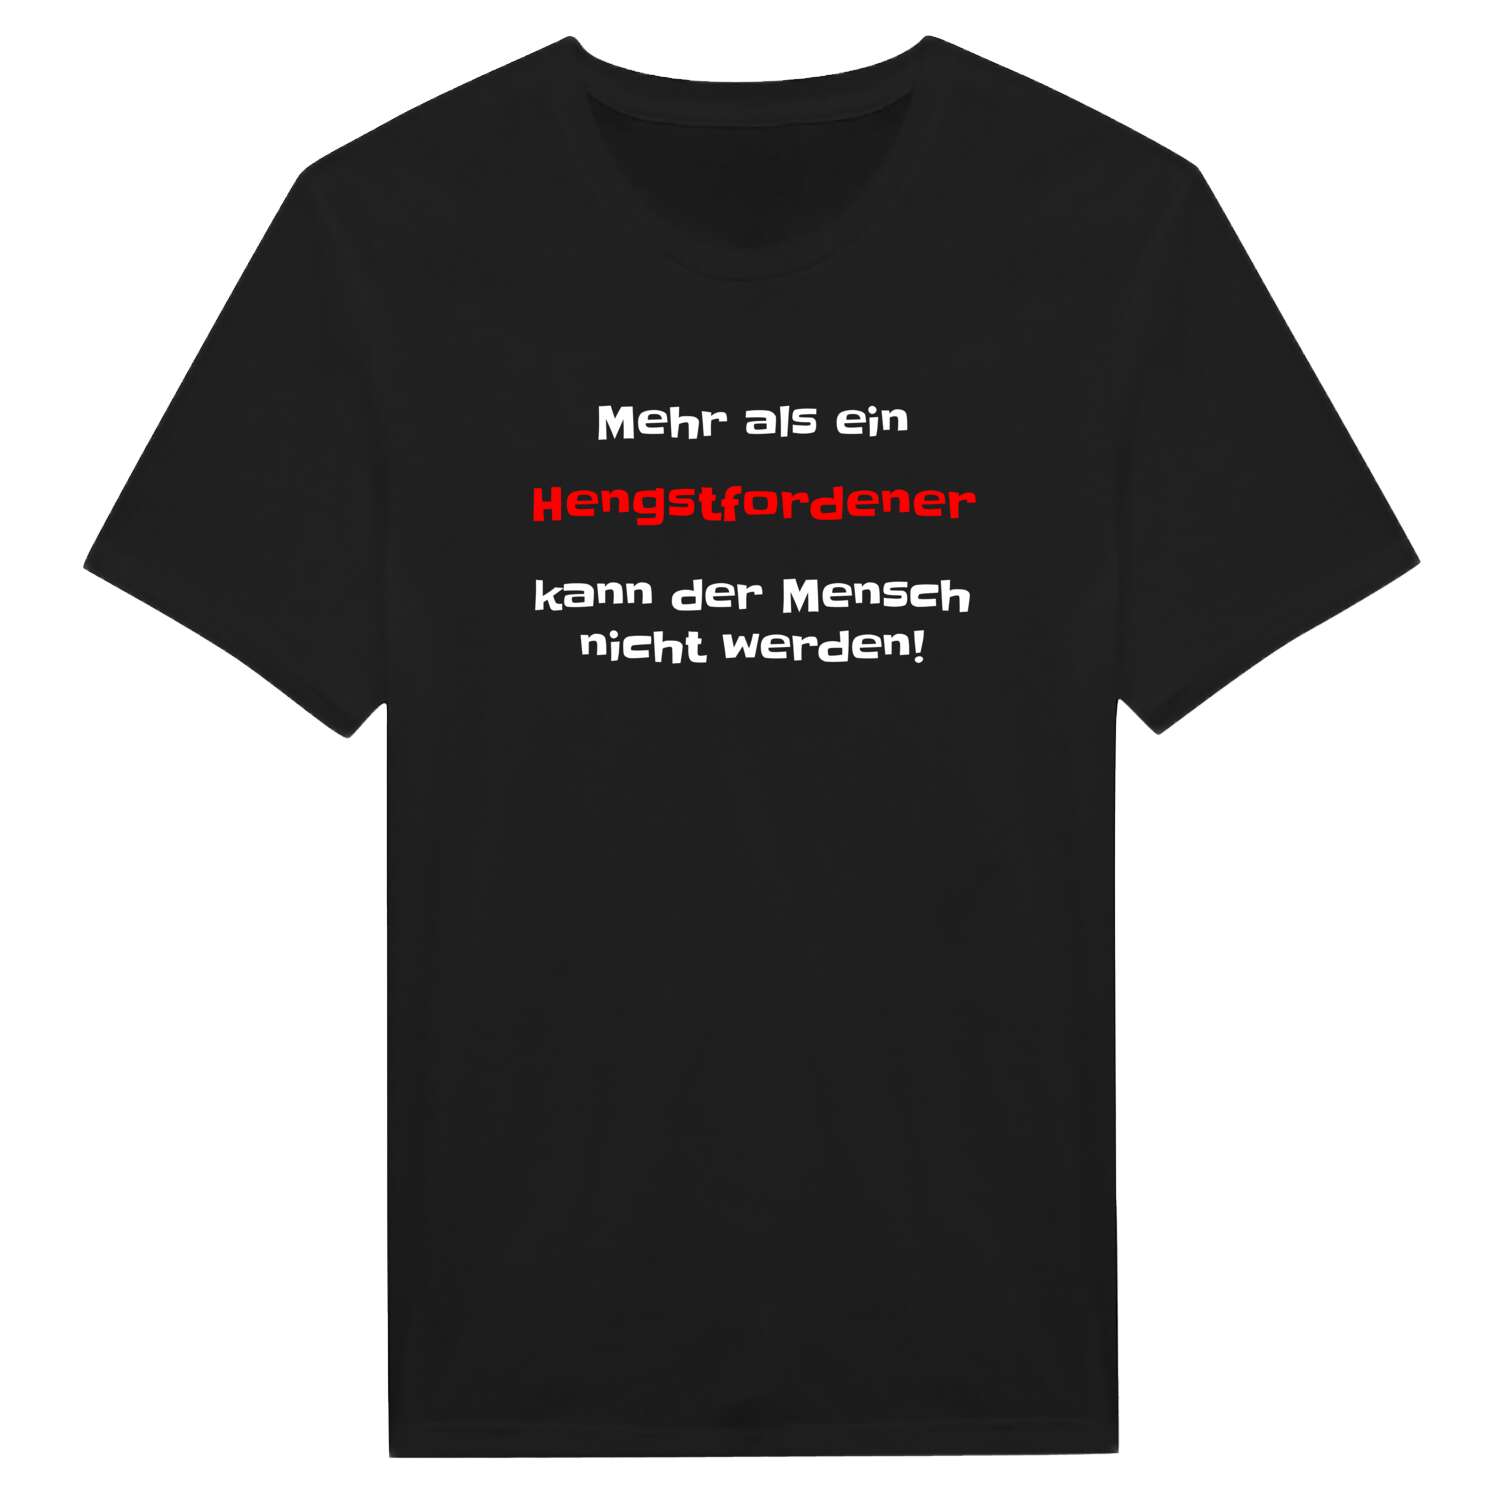 Hengstforde T-Shirt »Mehr als ein«